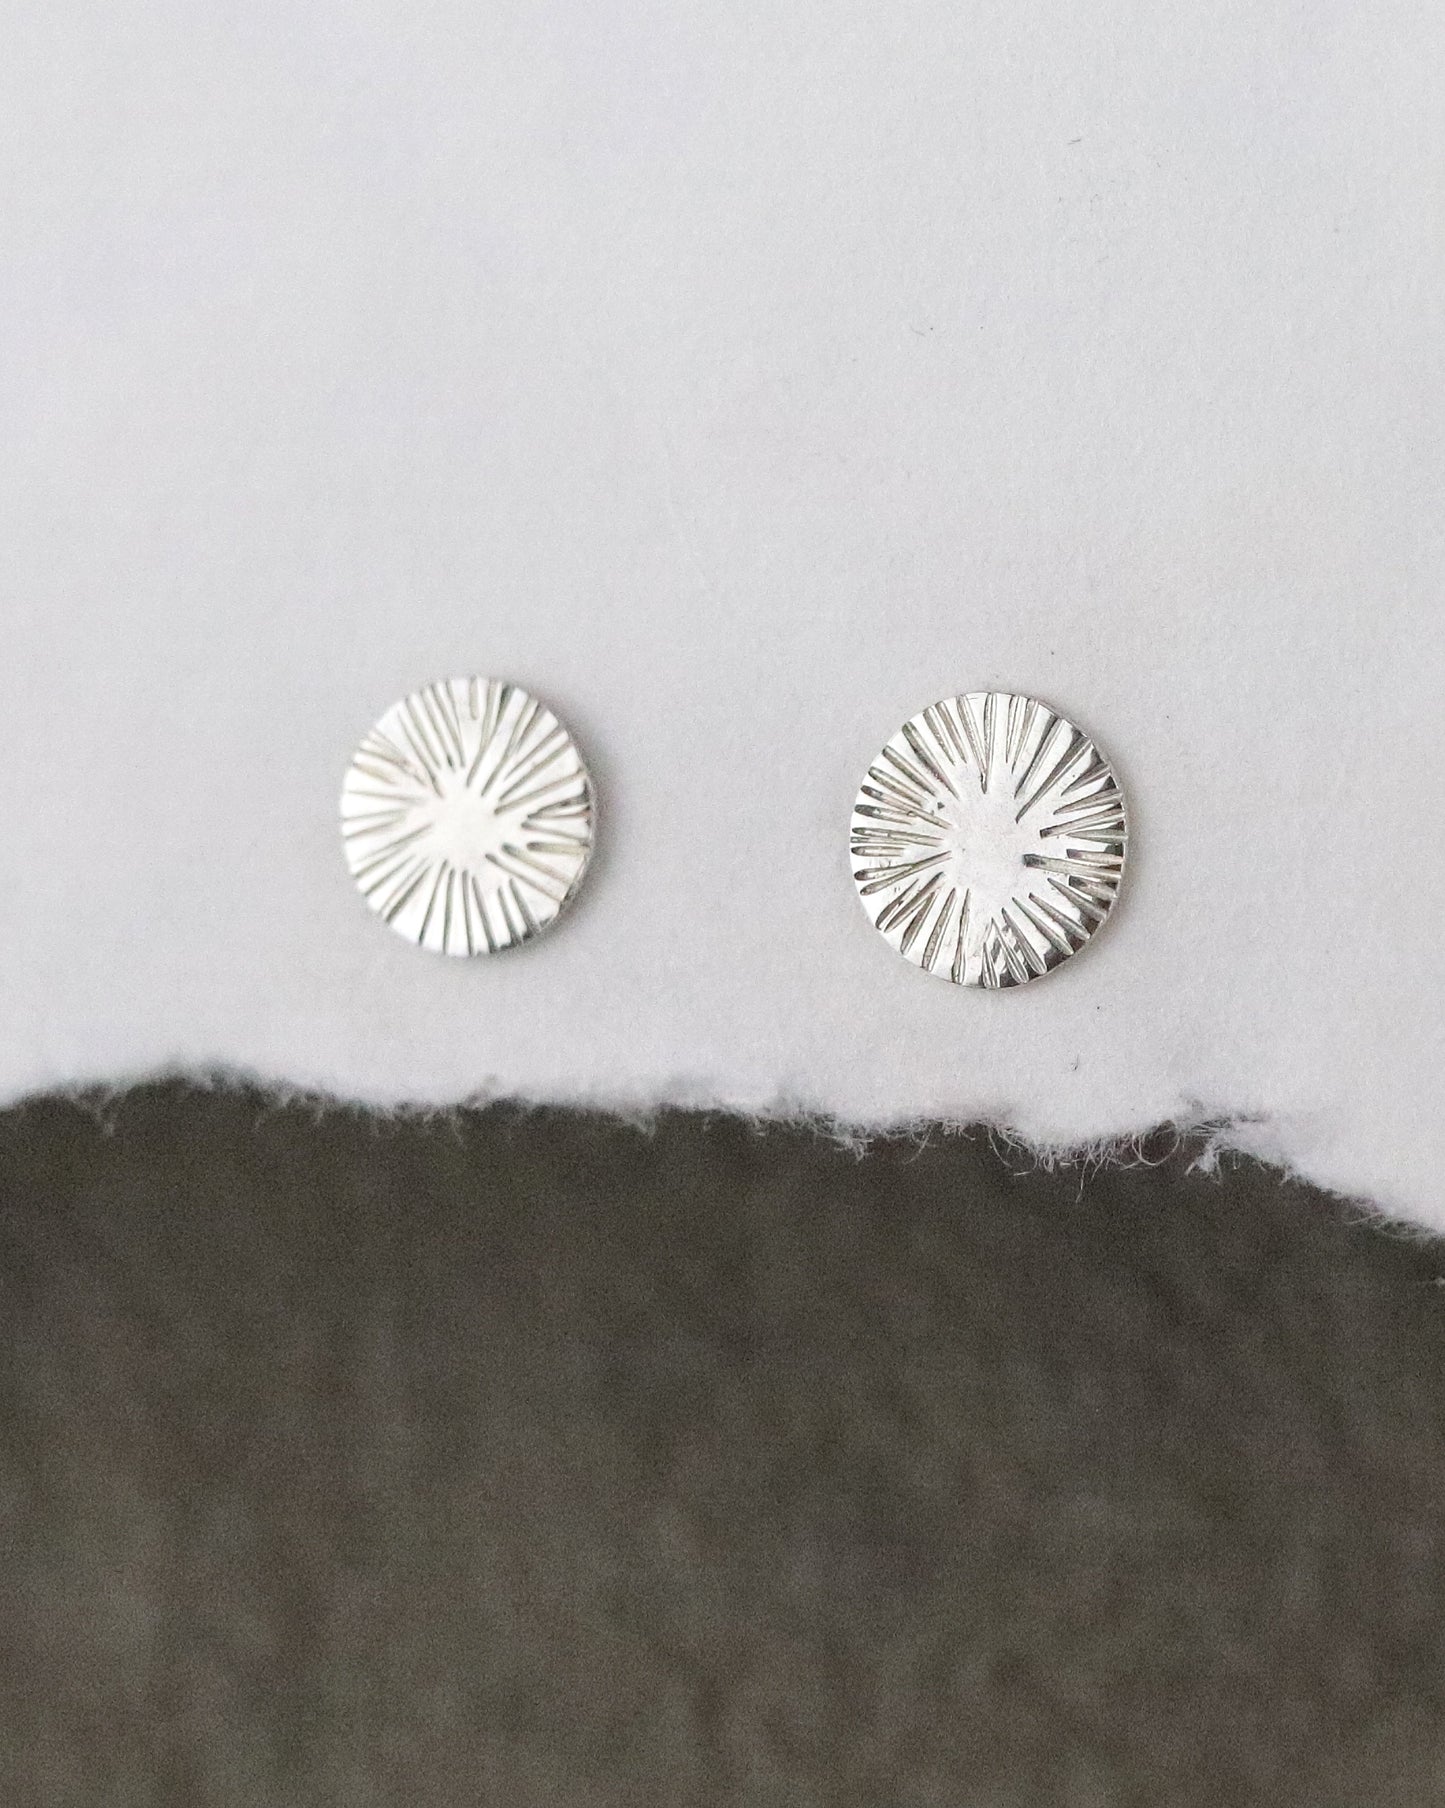 Boucles d'oreilles pour femme puces deux soleil en argent 925/1000 sur fond blanc